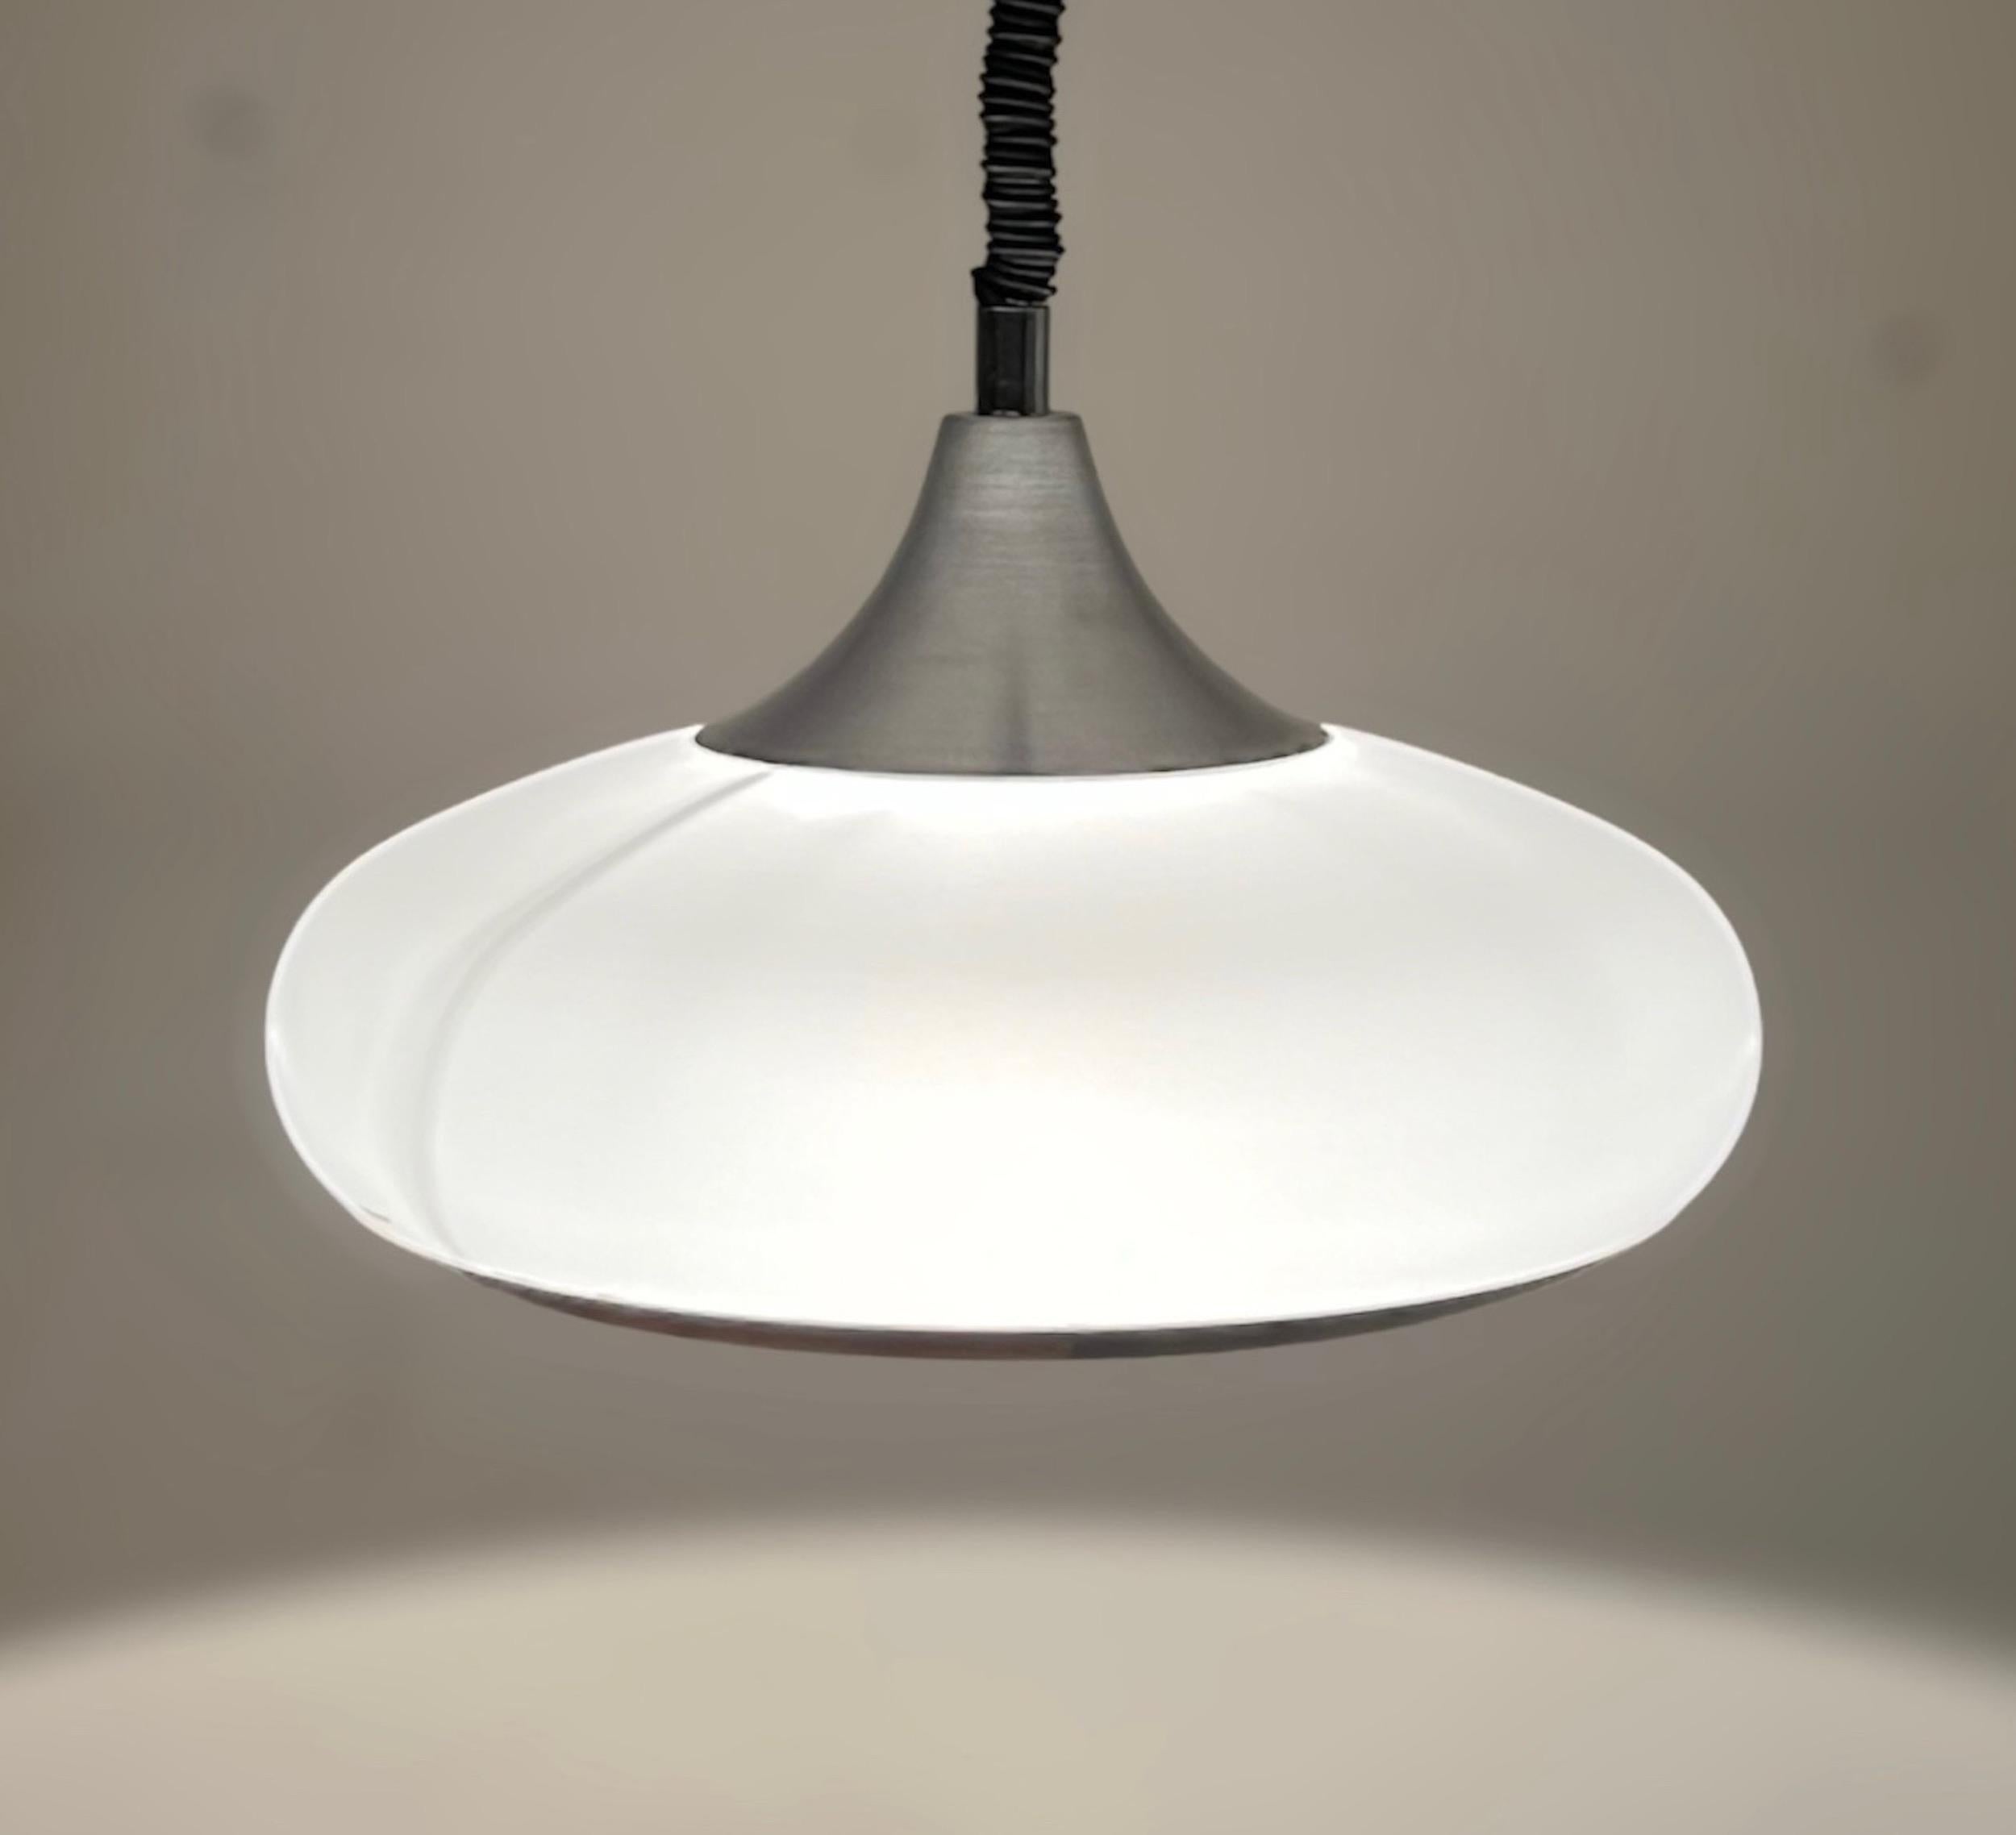 Lampe suspendue iconique de l'ère spatiale des années 70 fabriquée par Stilux Milano. Cette lampe est composée d'un sommet conique en métal argenté, qui supporte un grand abat-jour courbé en polyméthacrylate blanc.

Le mécanisme de fermeture est le